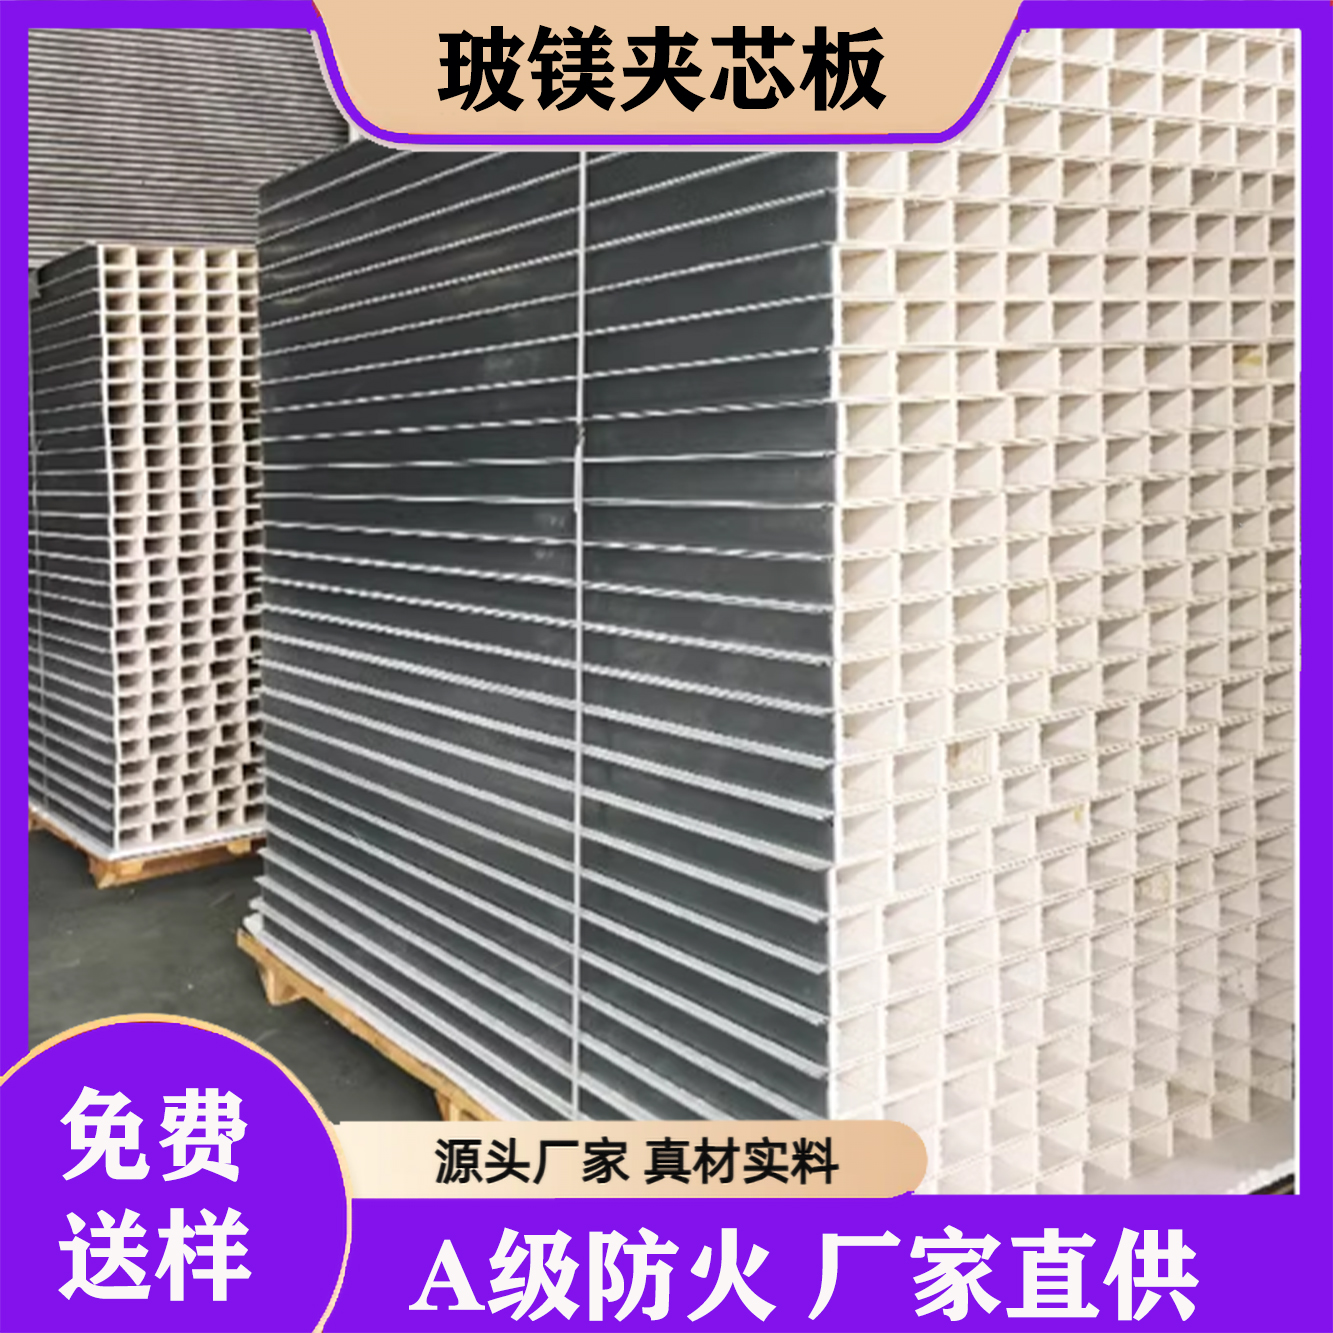 联和冠业 玻镁板 生物实验室隔墙 阻燃隔热 耐潮防腐优选钢板